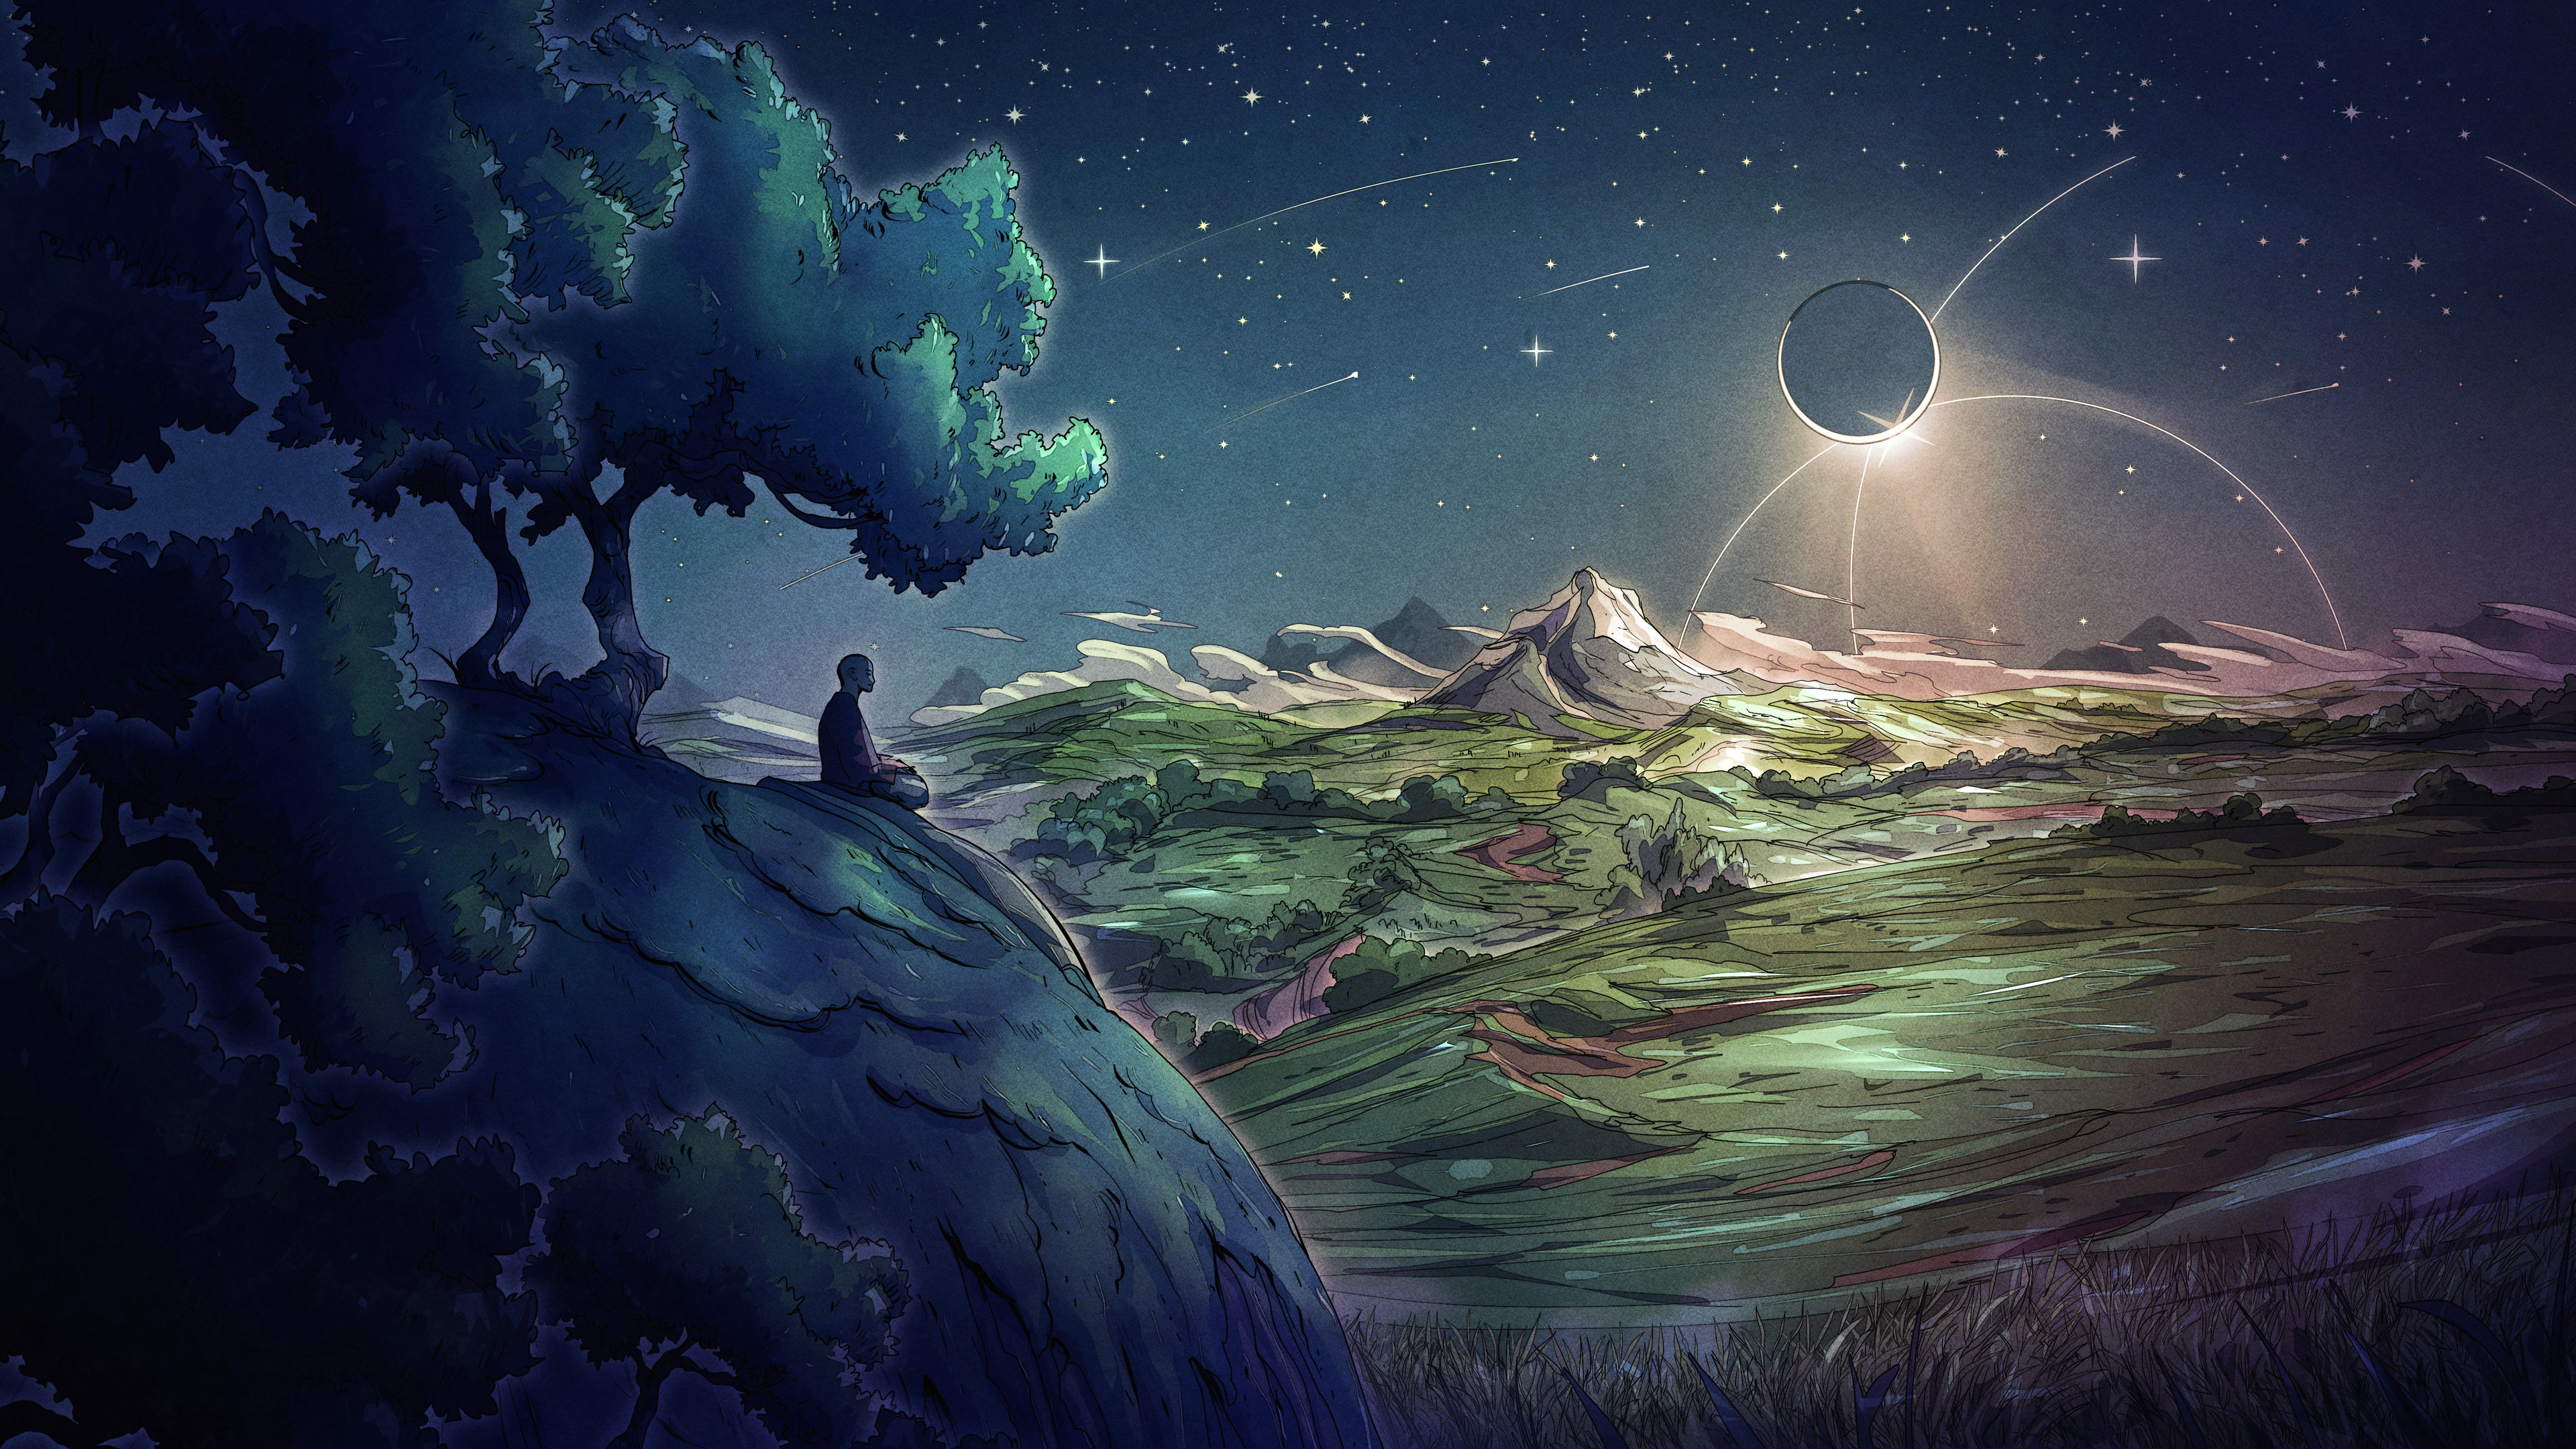 Christian Benavides Digital Art Fantasy Art Clouds Hills Grass Stars Night Mountains Eclipse Moon Me 3840x2160